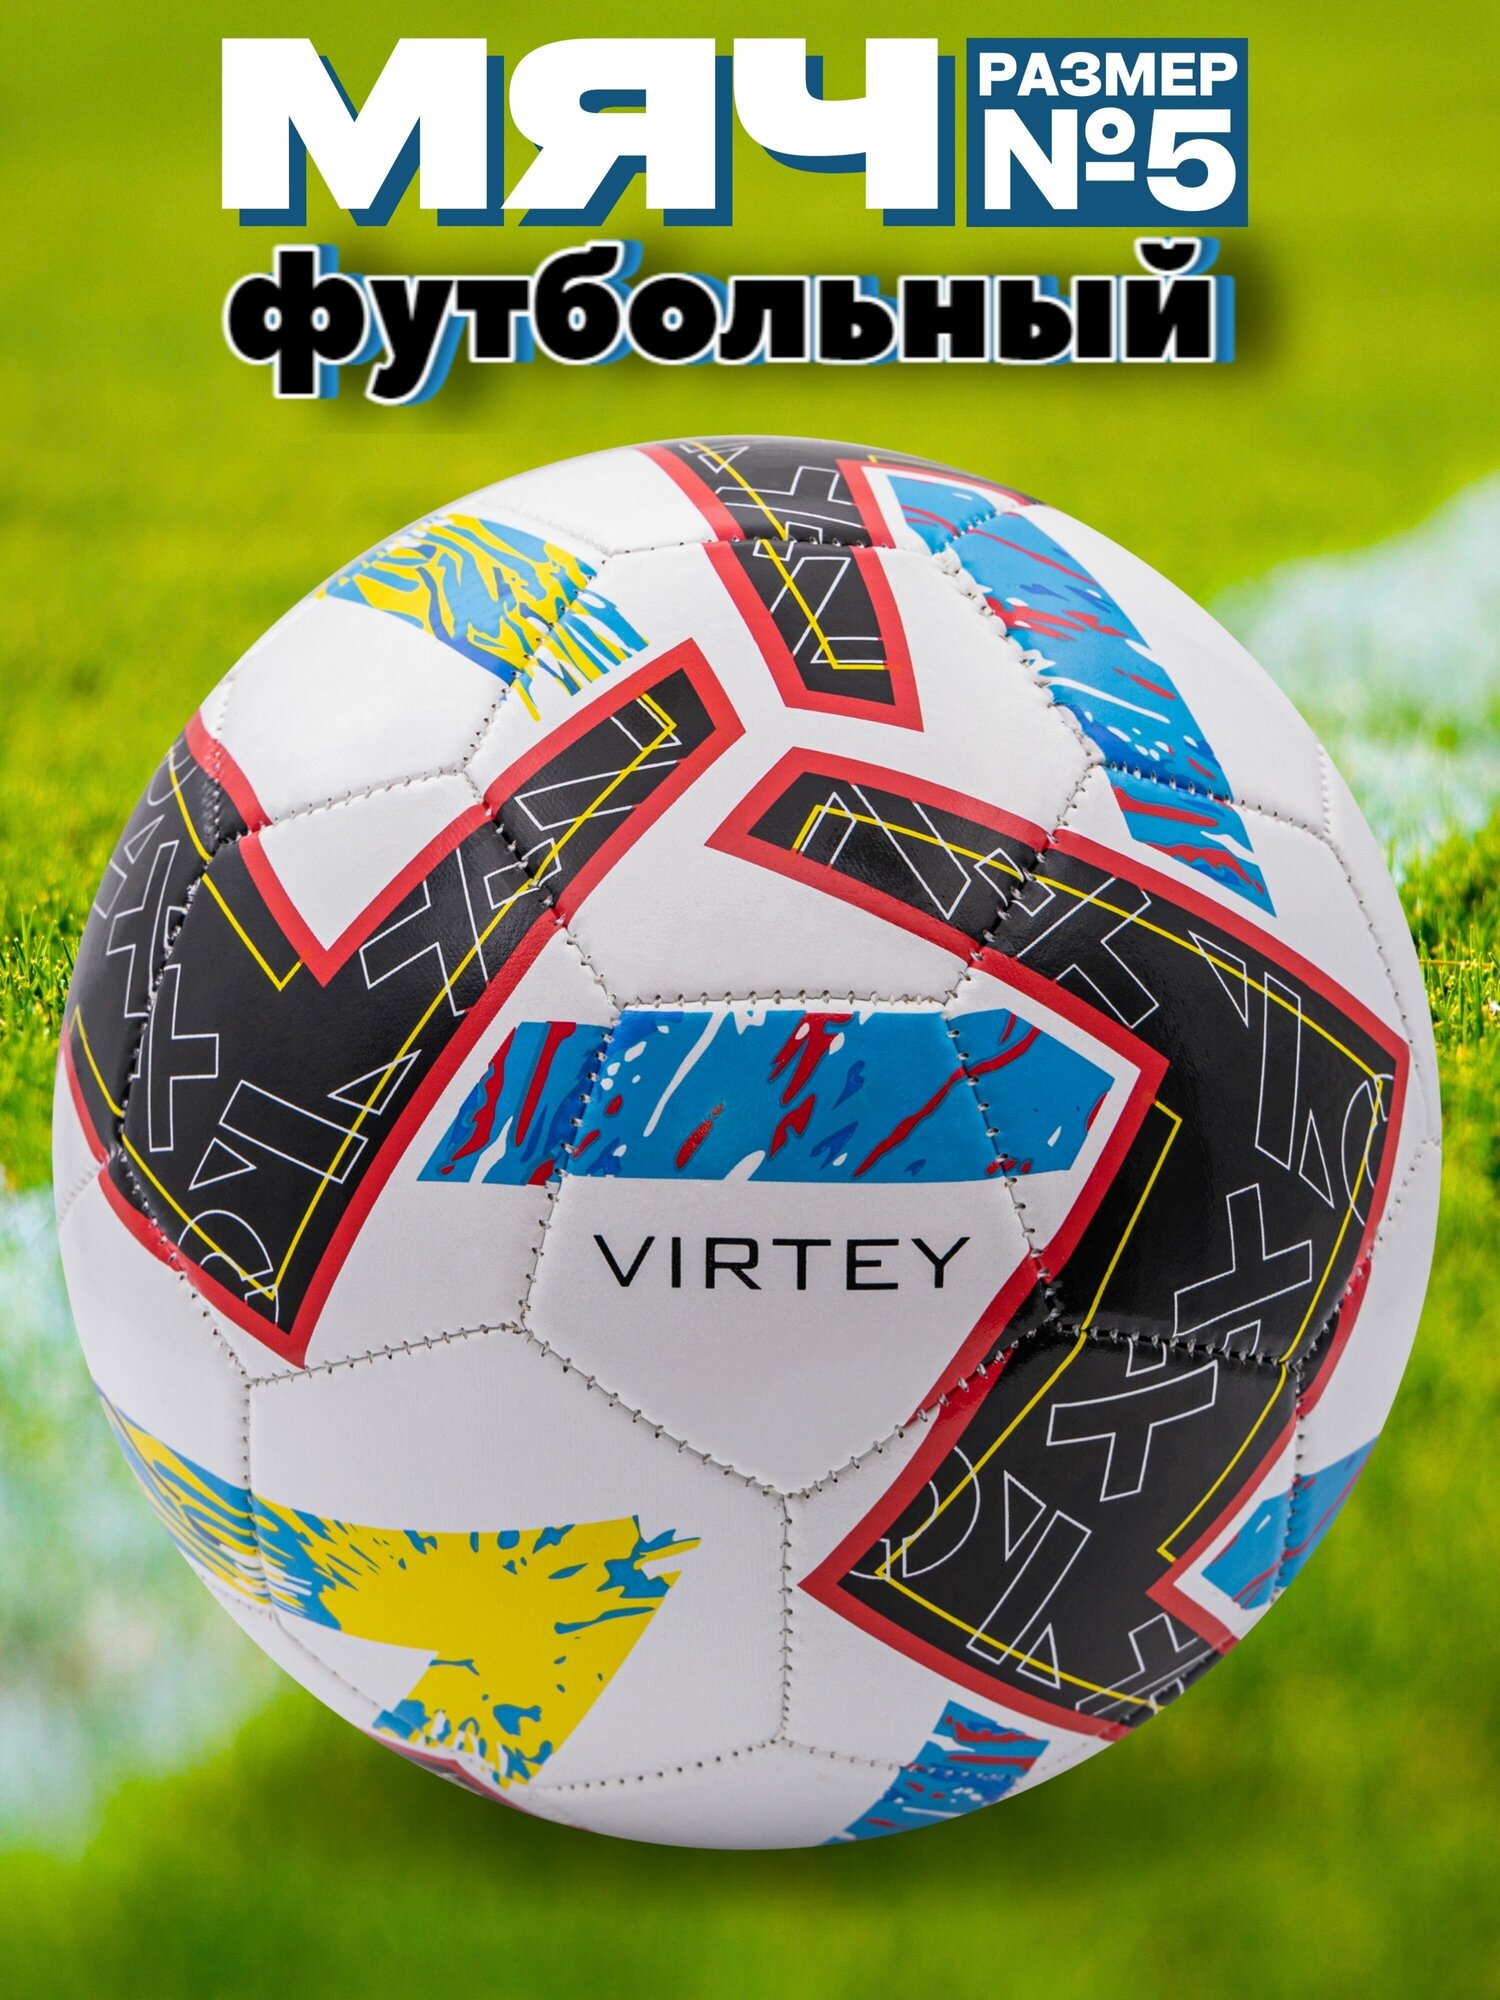 Футбольный мяч Virtey 2305 размер № 5 спортивный для зала и улицы